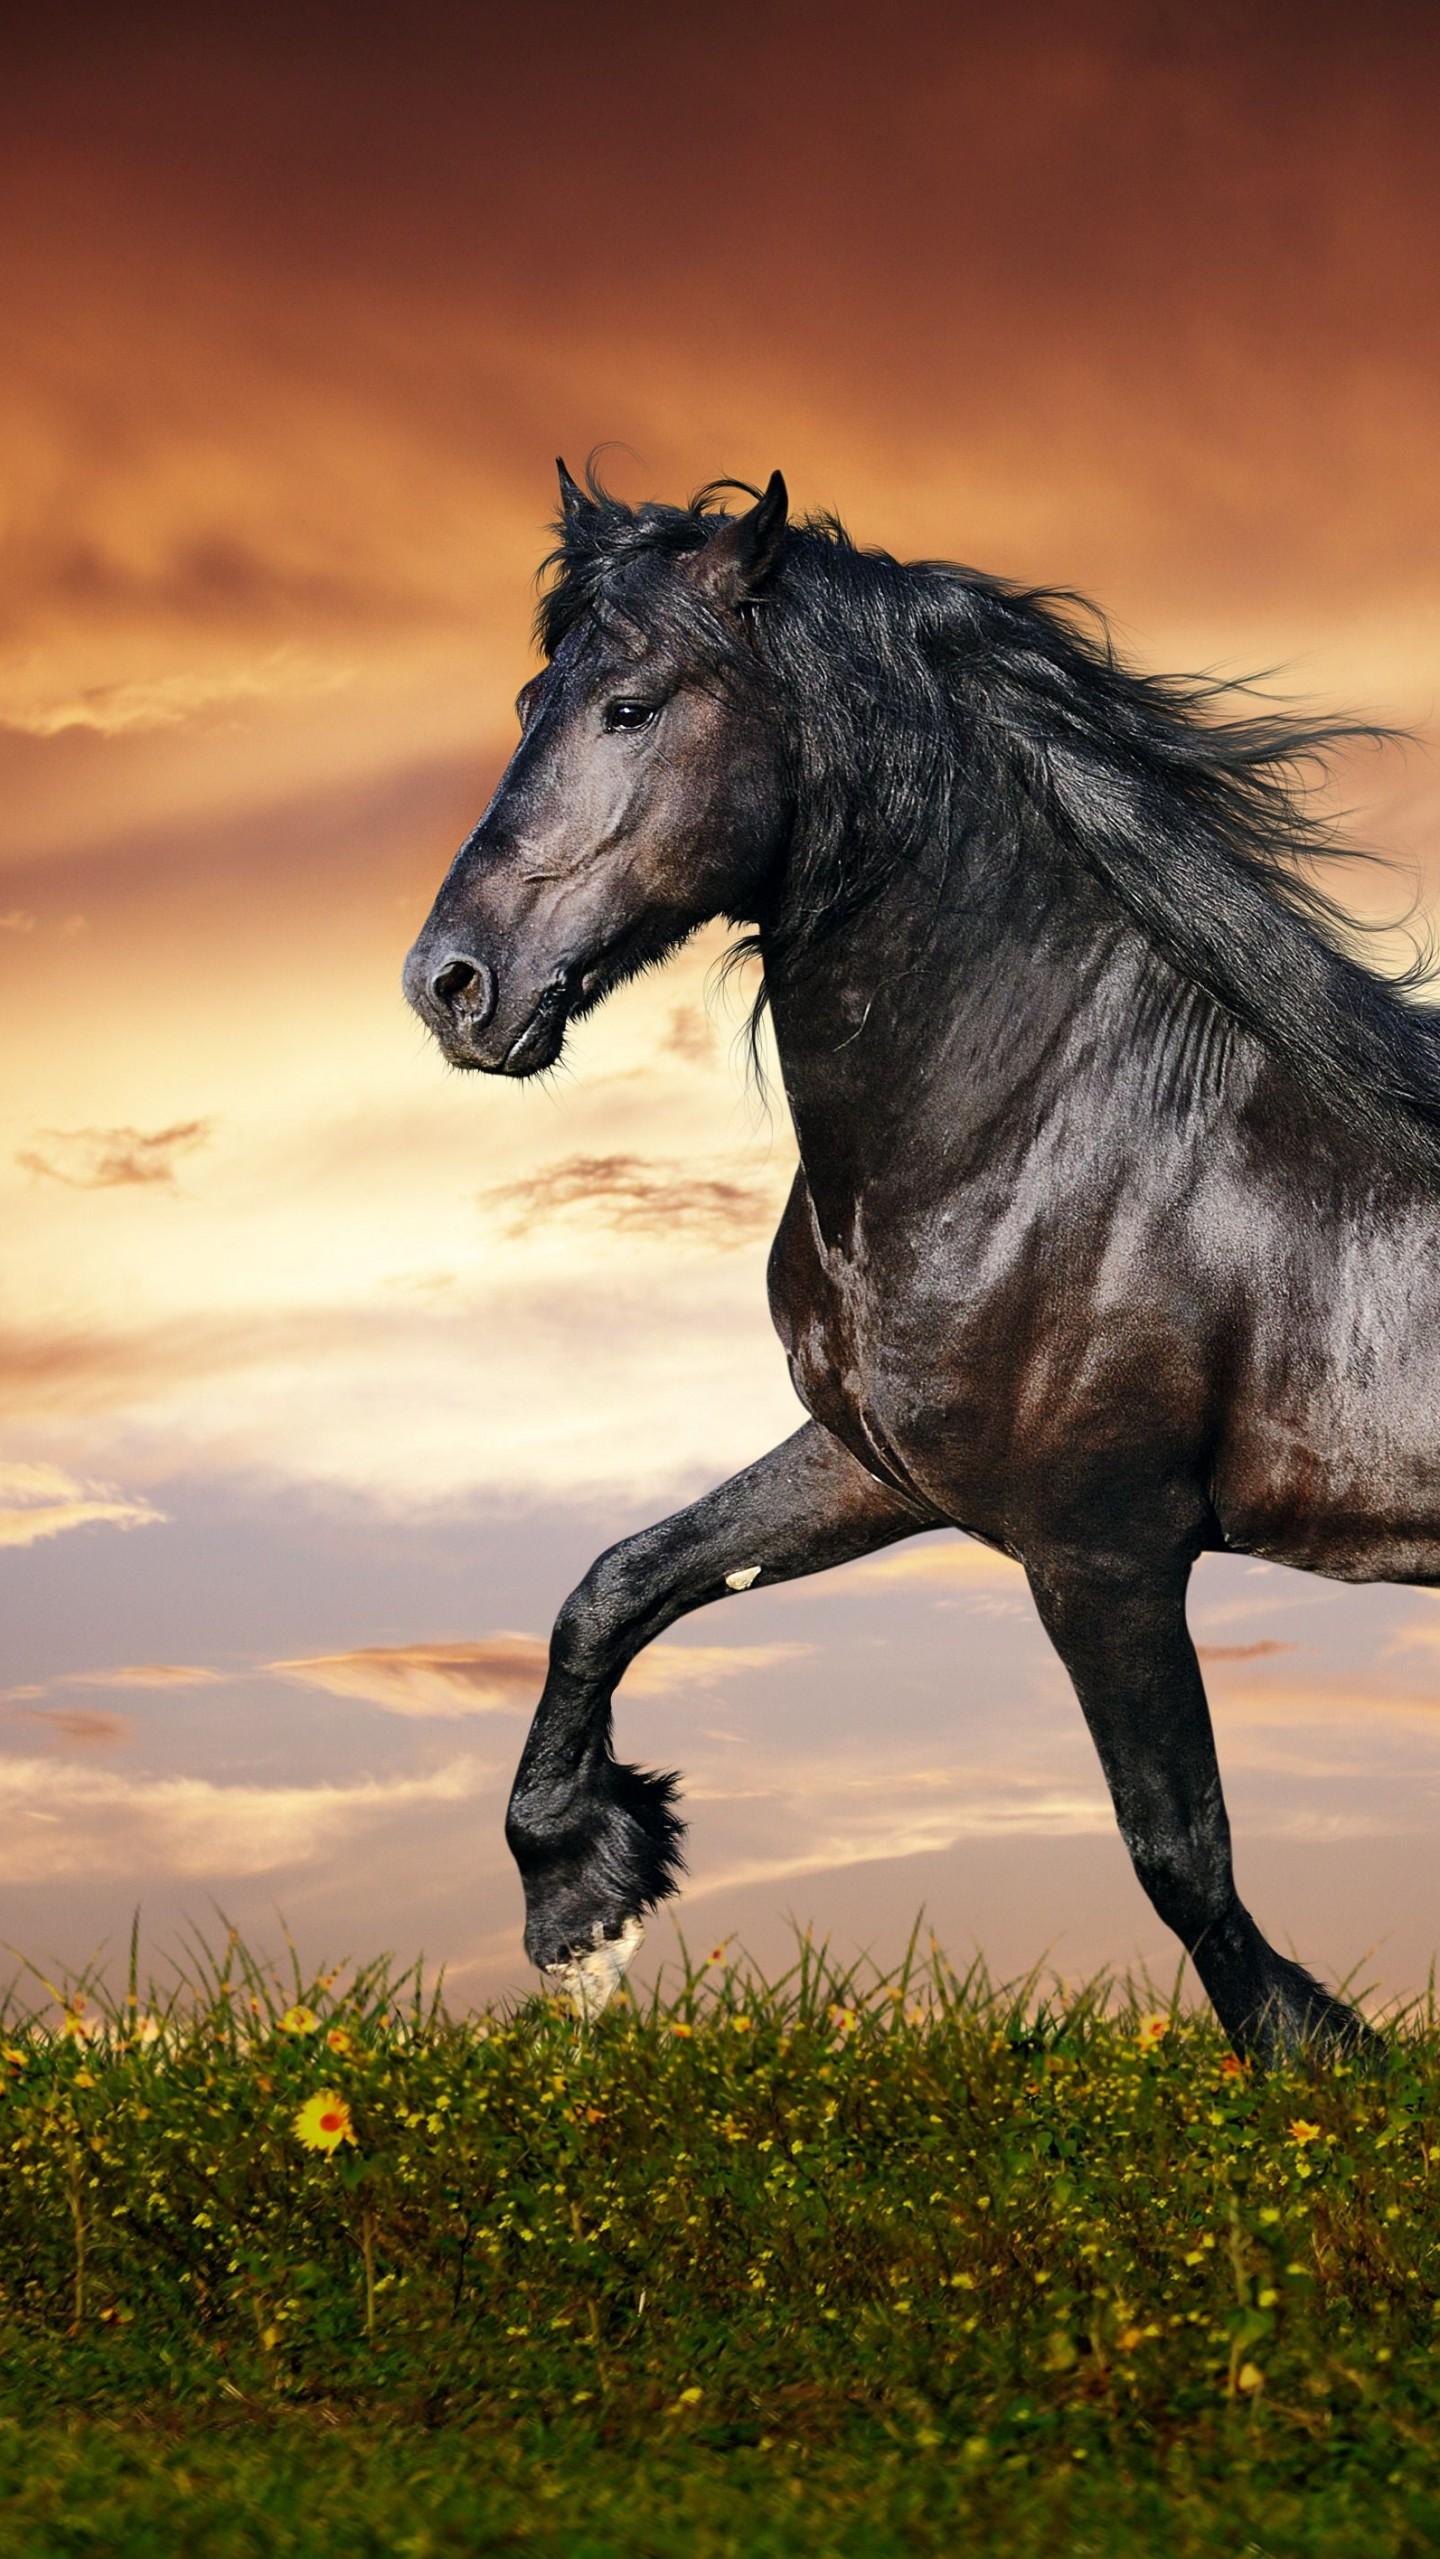 Wallpaper horse 5k 4k wallpaper hooves mane galloping black